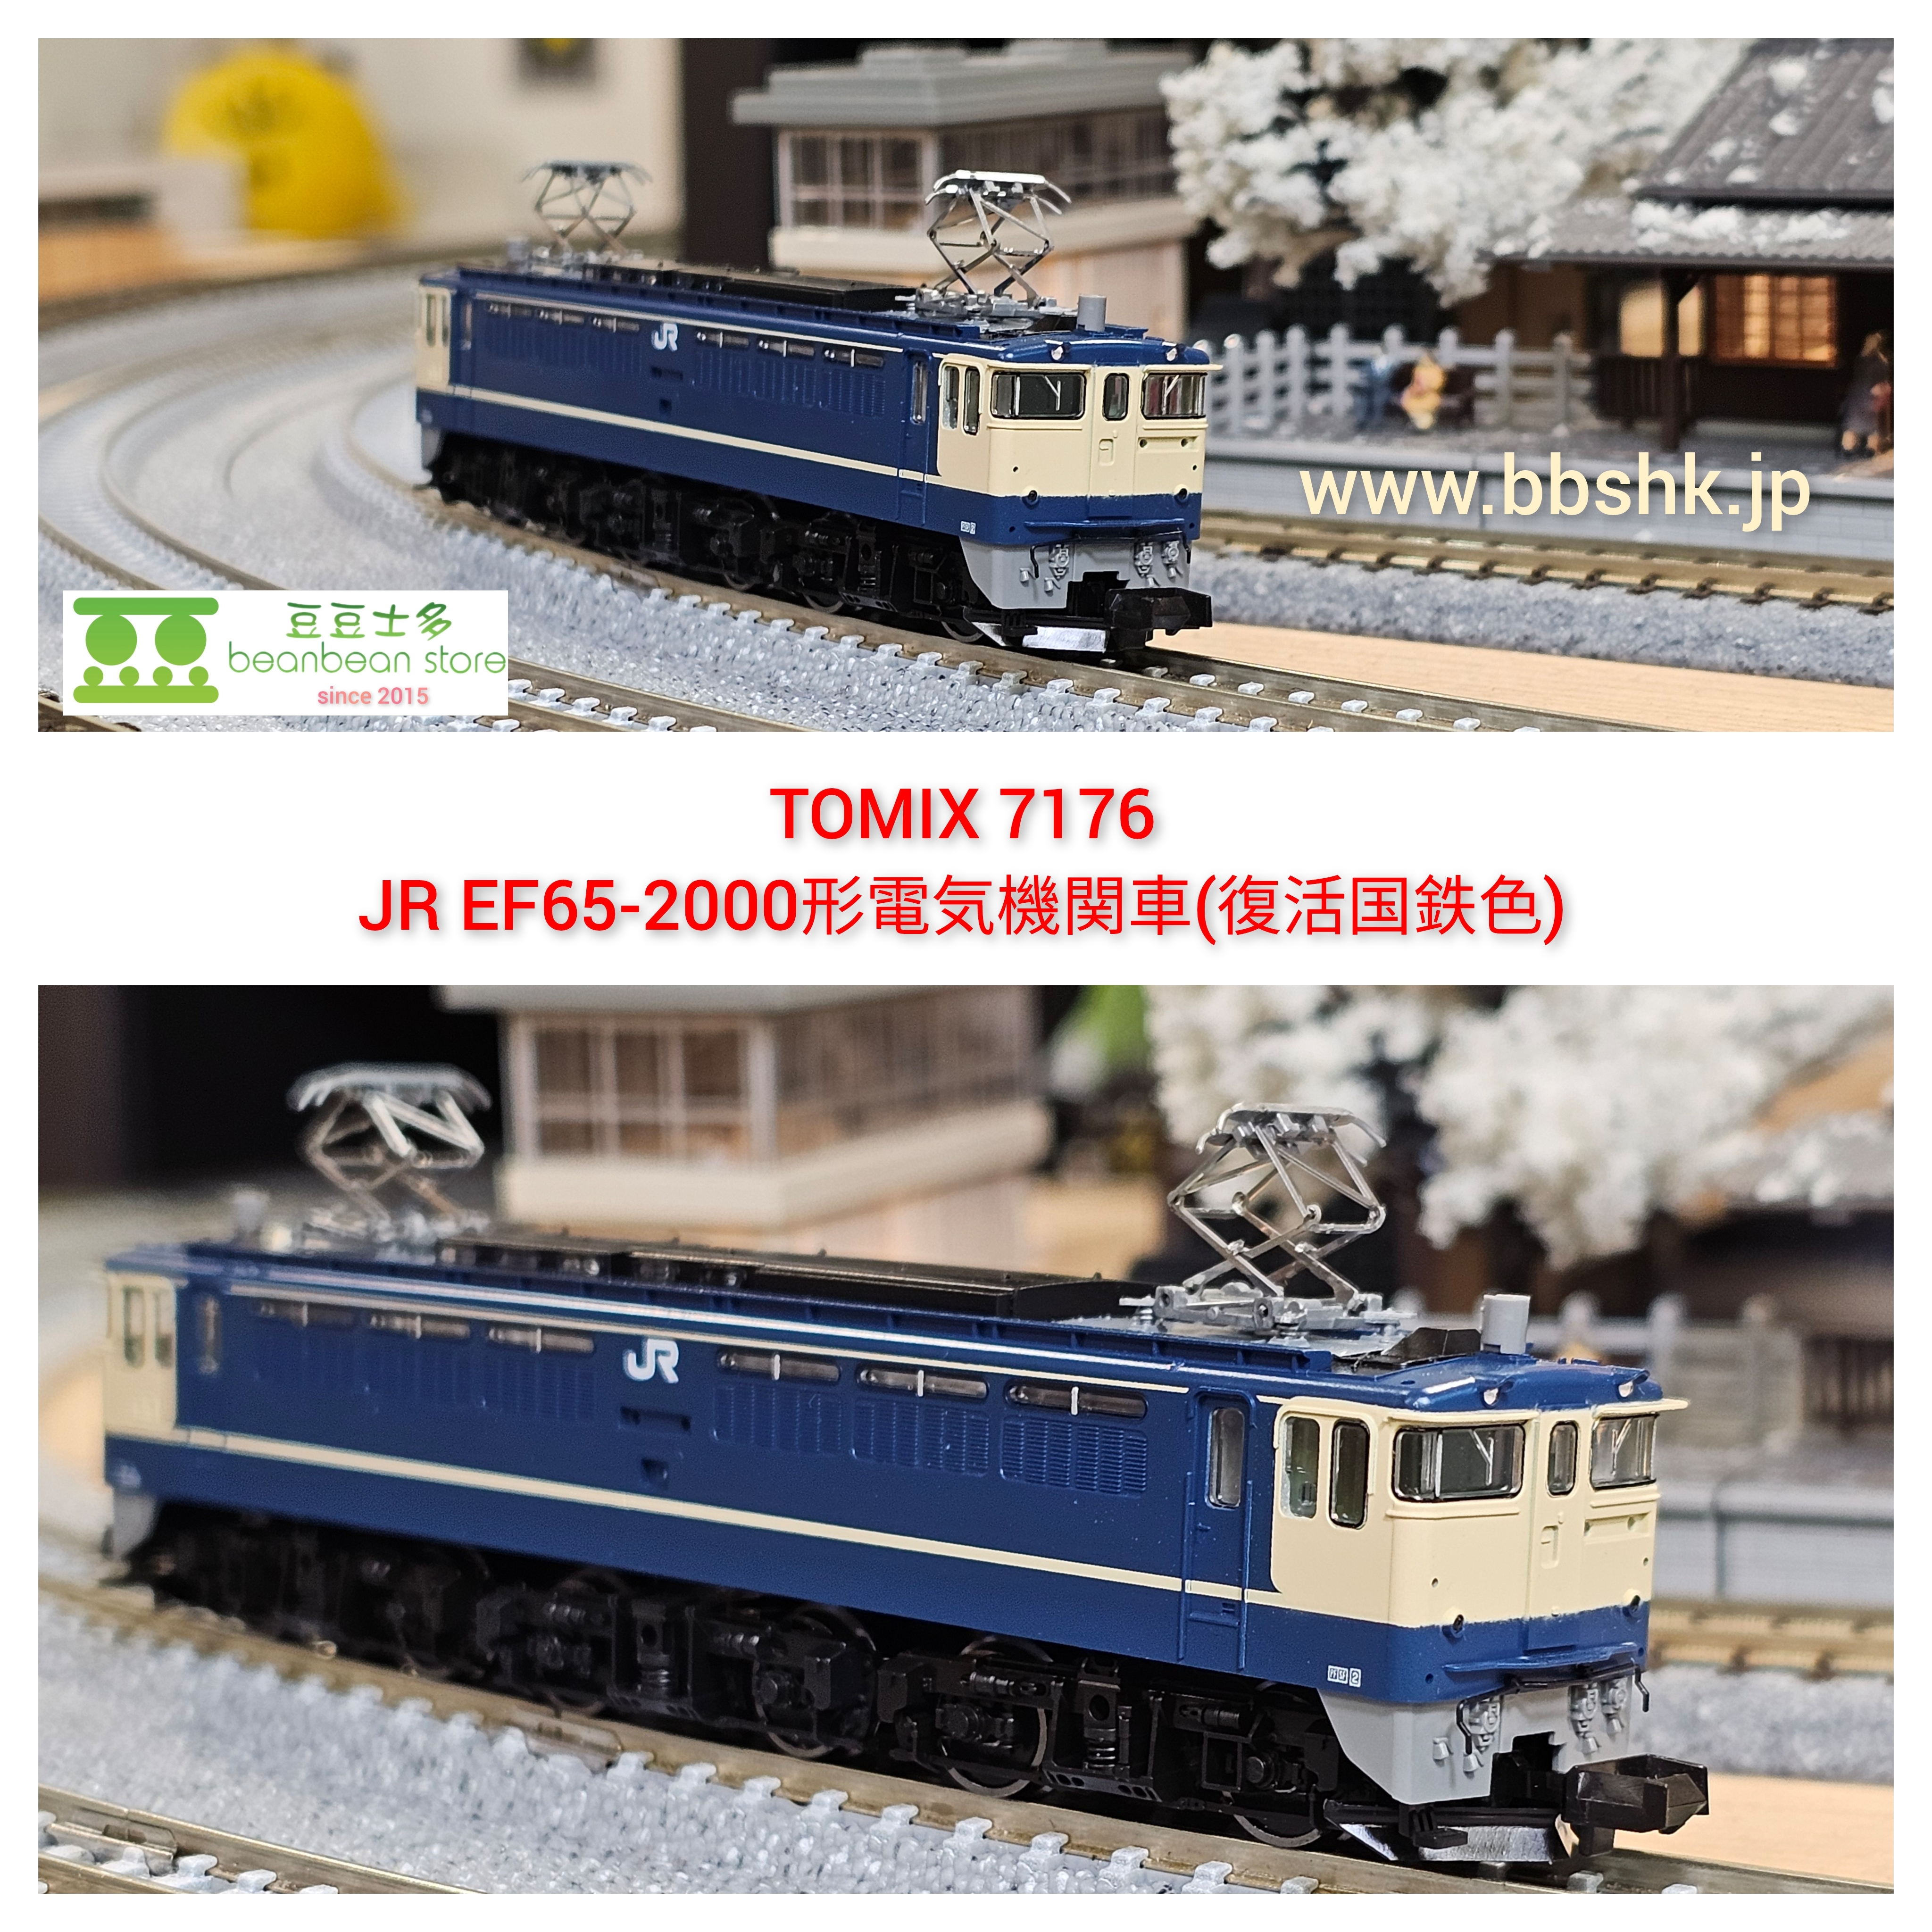 TOMIX 7176 JR EF65-2000形電気機関車 (復活国鉄色)